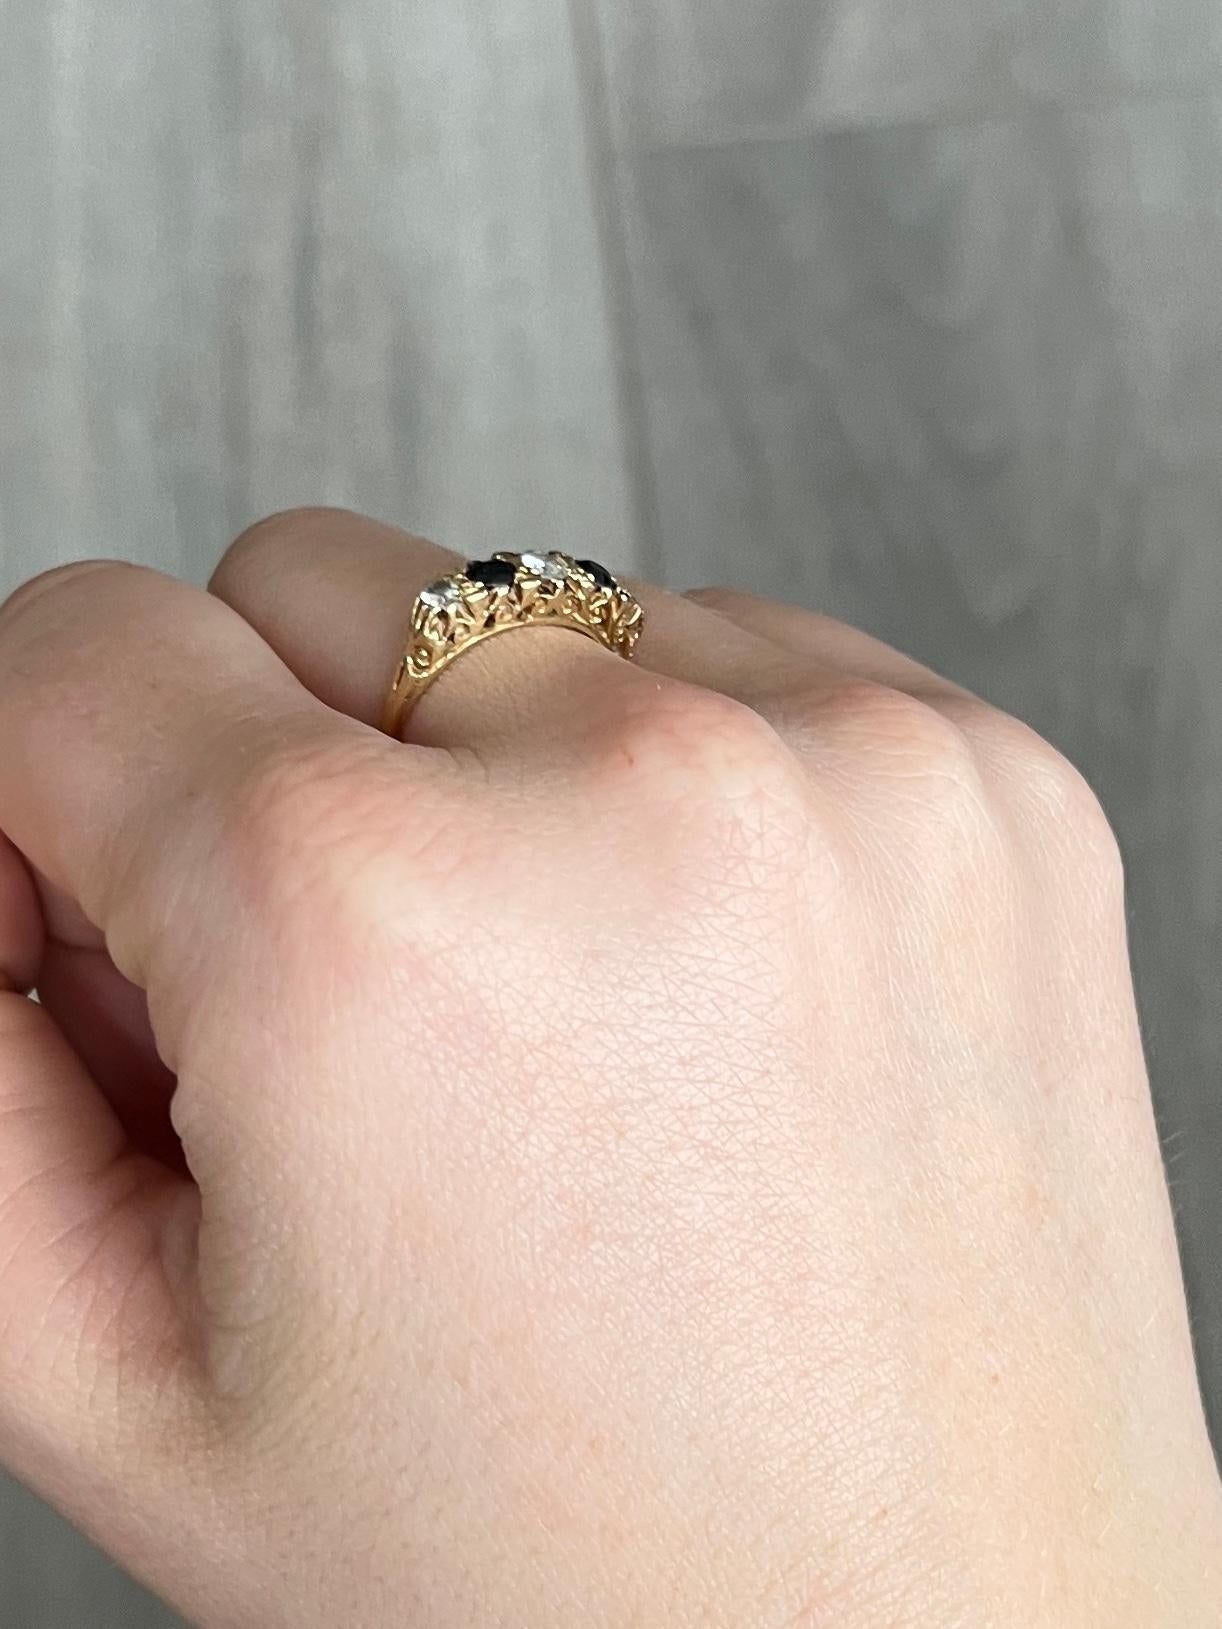 Dieser wunderschöne Ring enthält zwei tiefblaue Saphire mit insgesamt 30 Pence und drei Diamanten mit insgesamt 25 Pence. Der Ring ist aus 18 Karat Gold modelliert. 

Ring Größe: M 1/2 oder 6 1/2 
Bandbreite: 5mm
Höhe ohne Finger: 4mm

Gewicht: 3,9